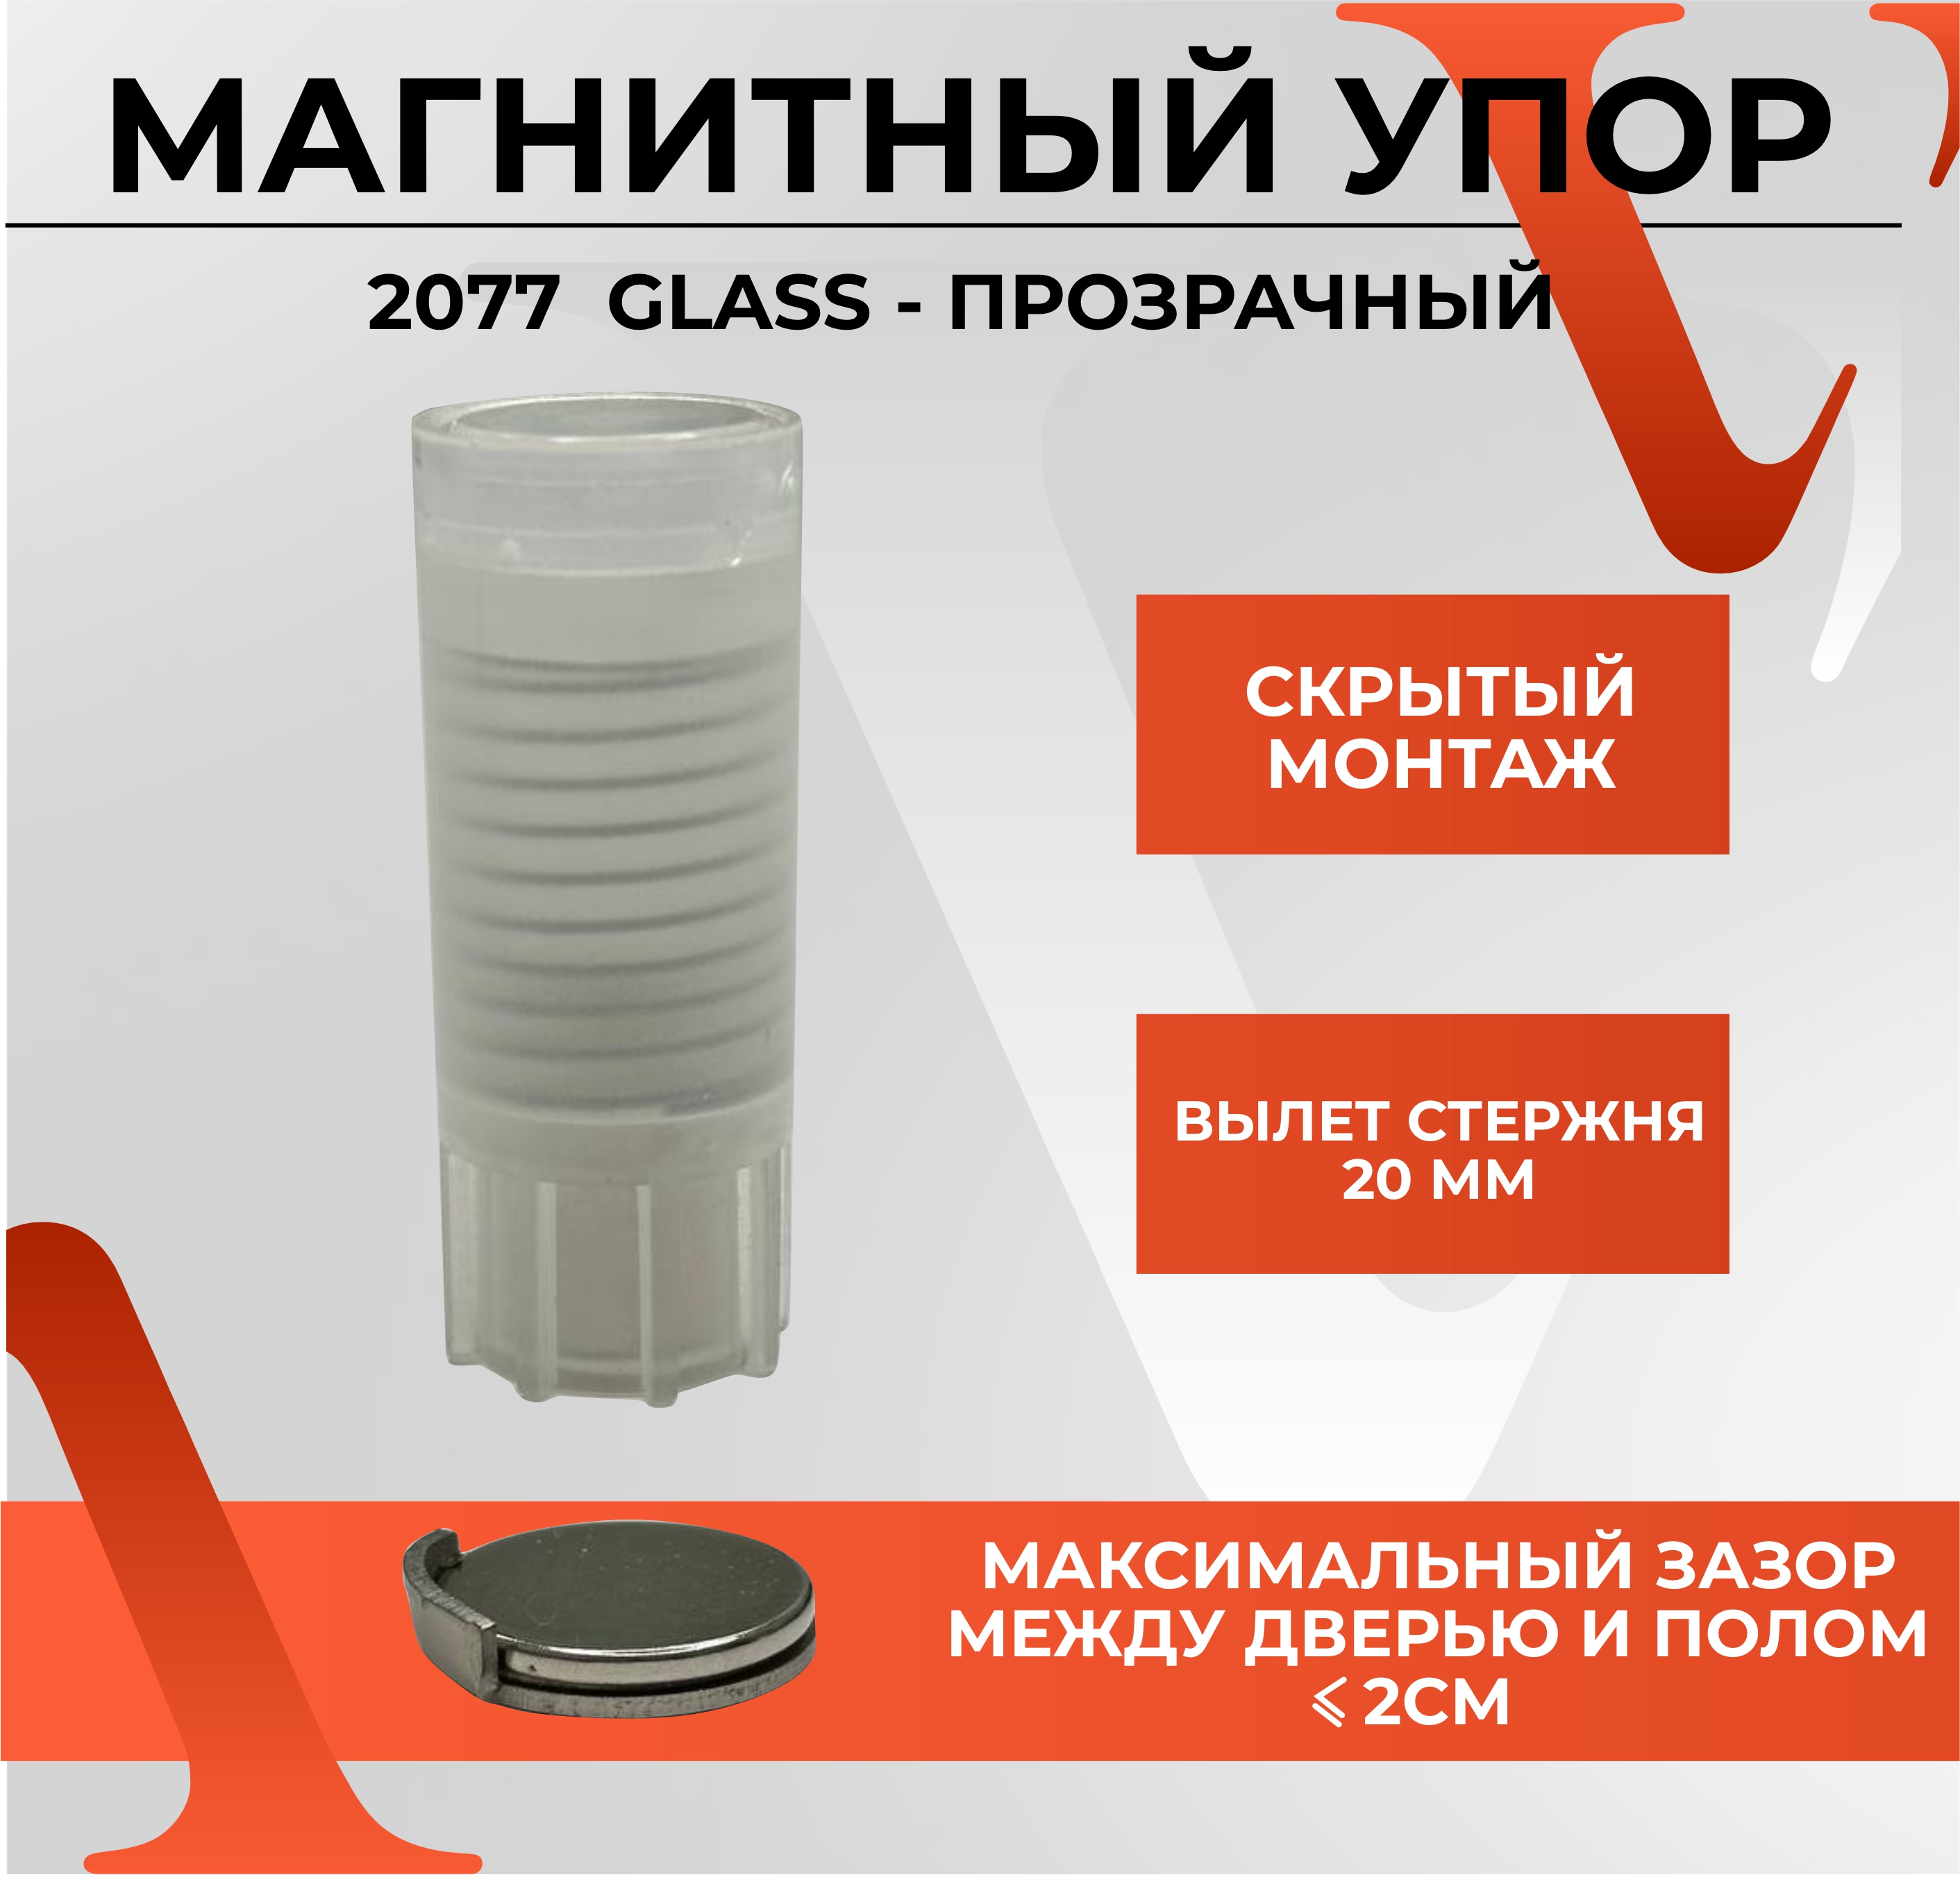 Упор дверной ABRISS магнитный, скрытого монтажа, напольный 2077 GLASS, Прозрачный